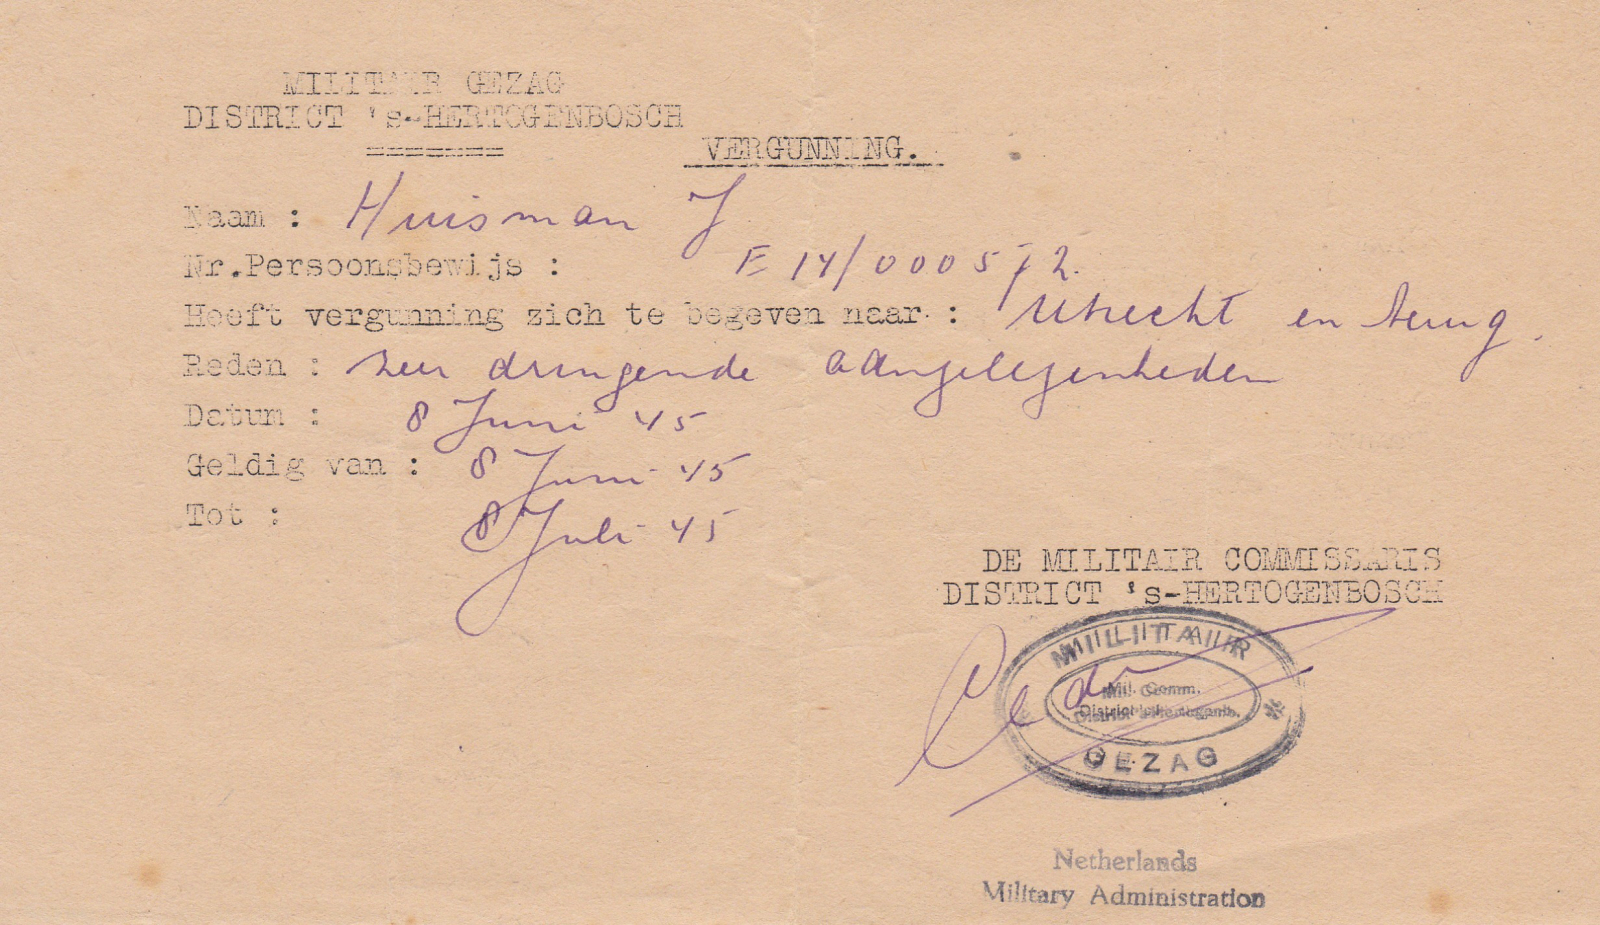 Huisman heeft verginning zich van en naar Utrecht te begeven tussen 8 juni en 8 juli 1945